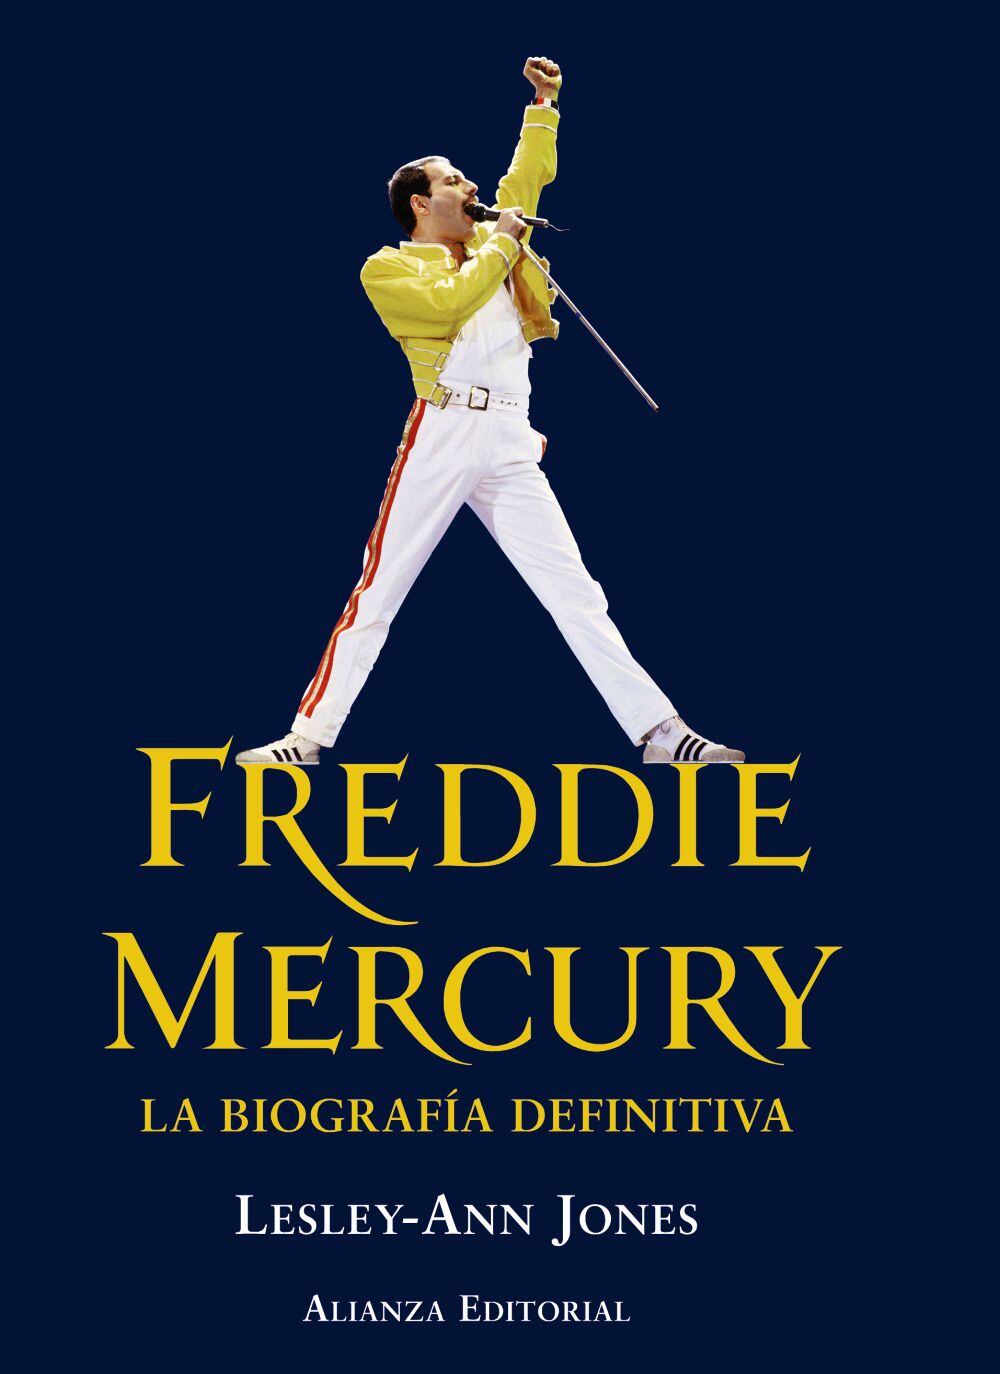 Freddie Mercury: La Biografía Definitiva (Alianza Editorial)